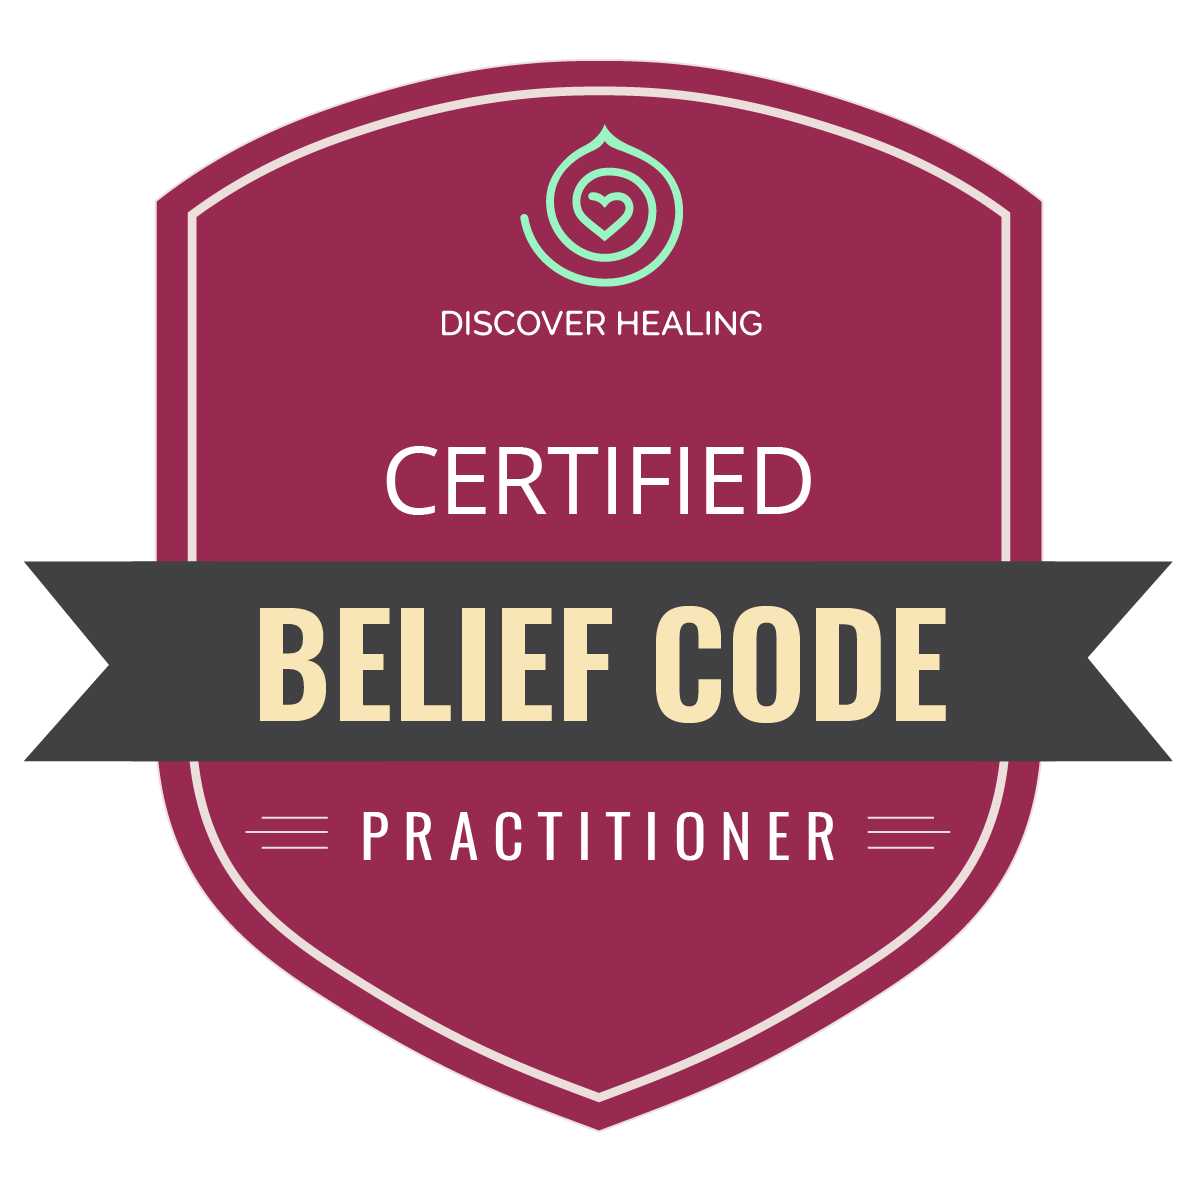 Certified Belief Code Practitioner - Discover Healing